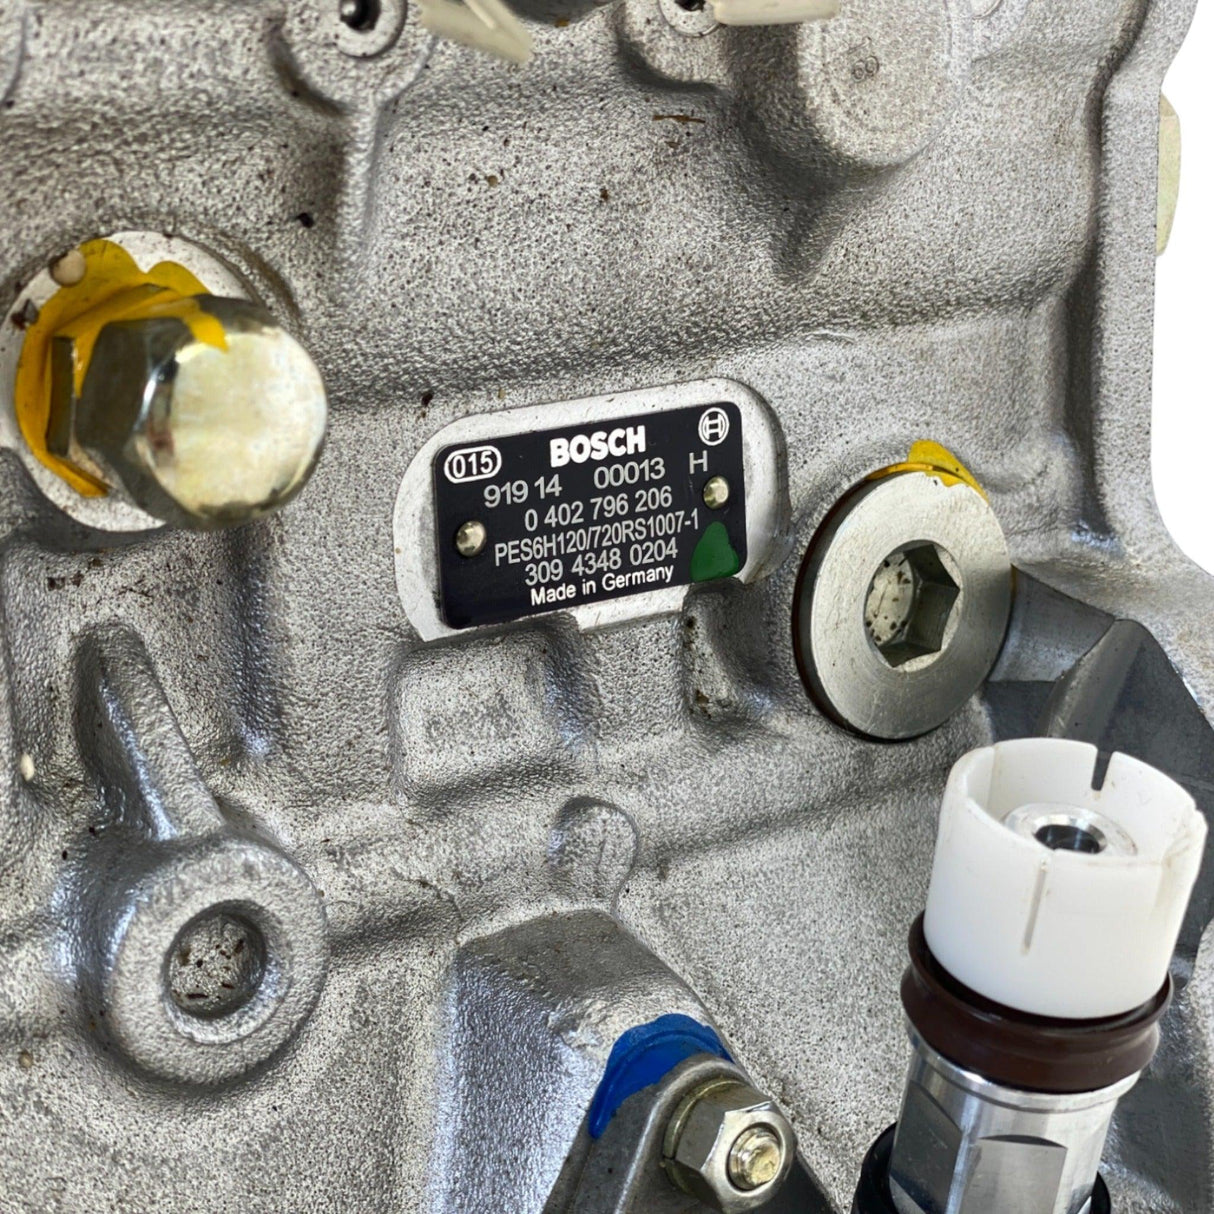 040296206 Genuine Bosch Fuel Injection Pump.